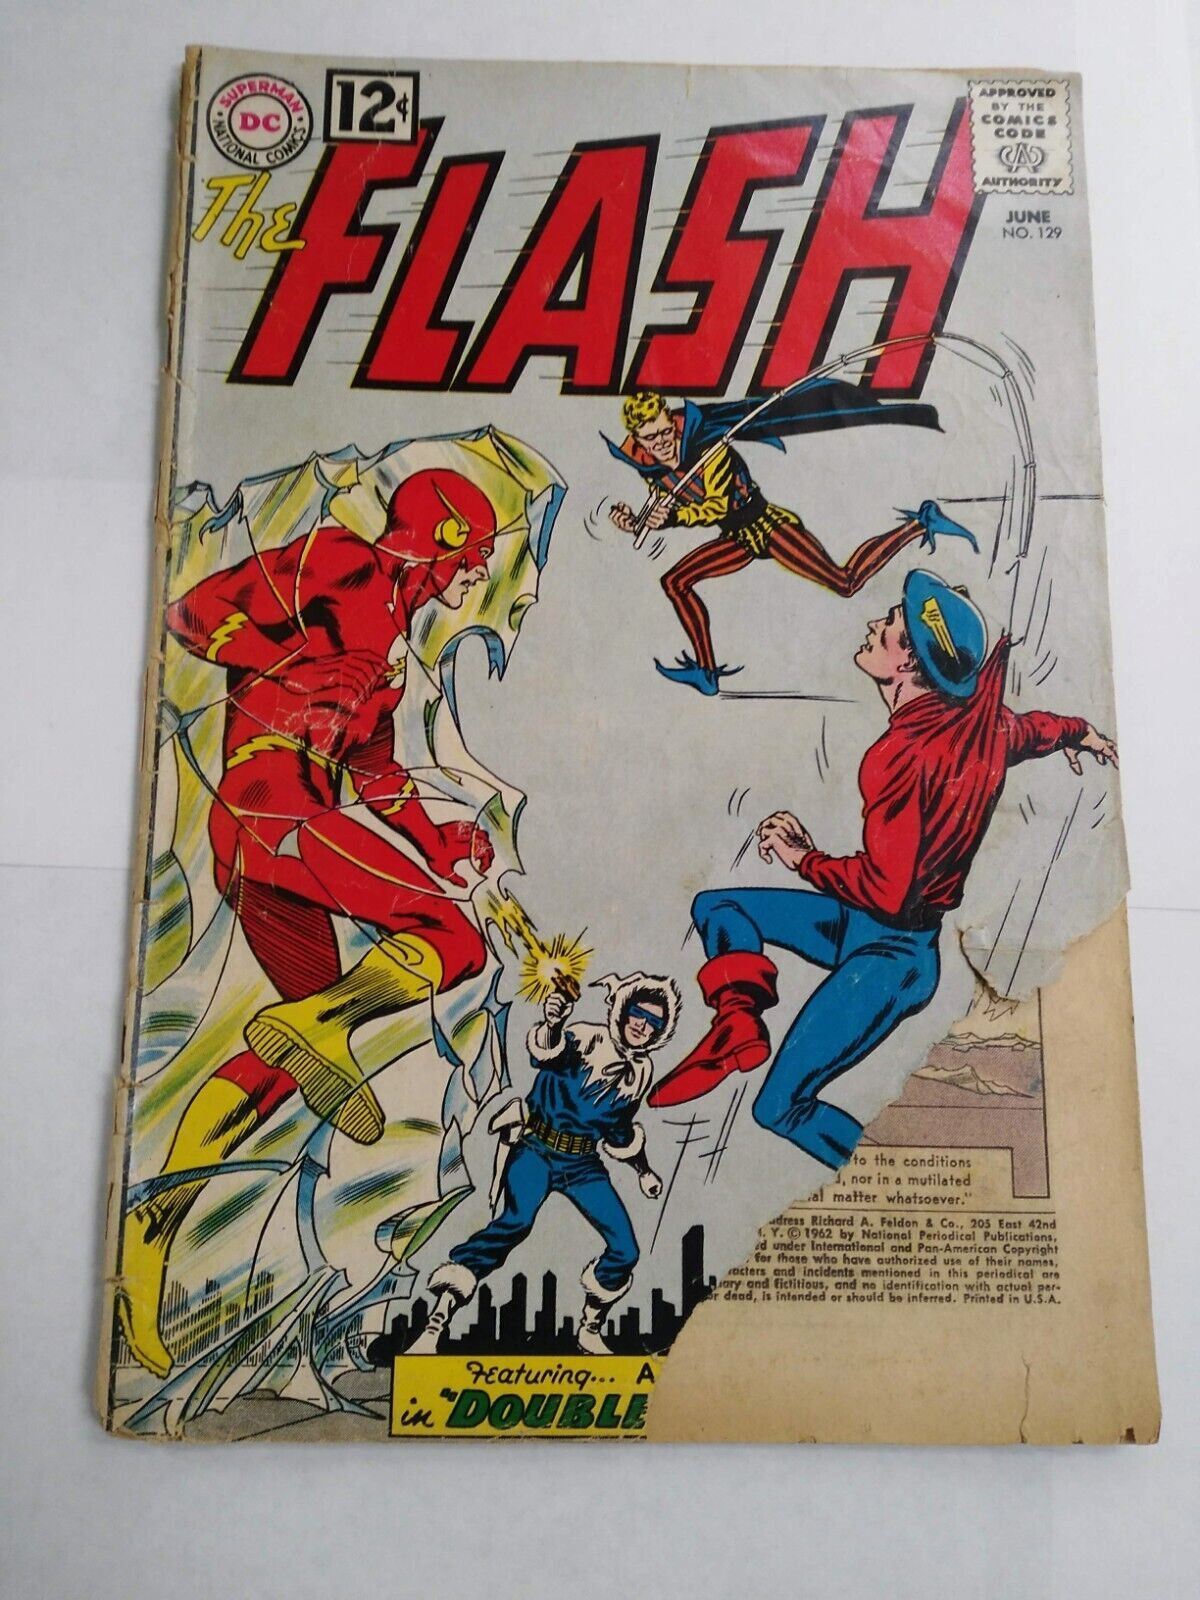 The Flash #129 comic book